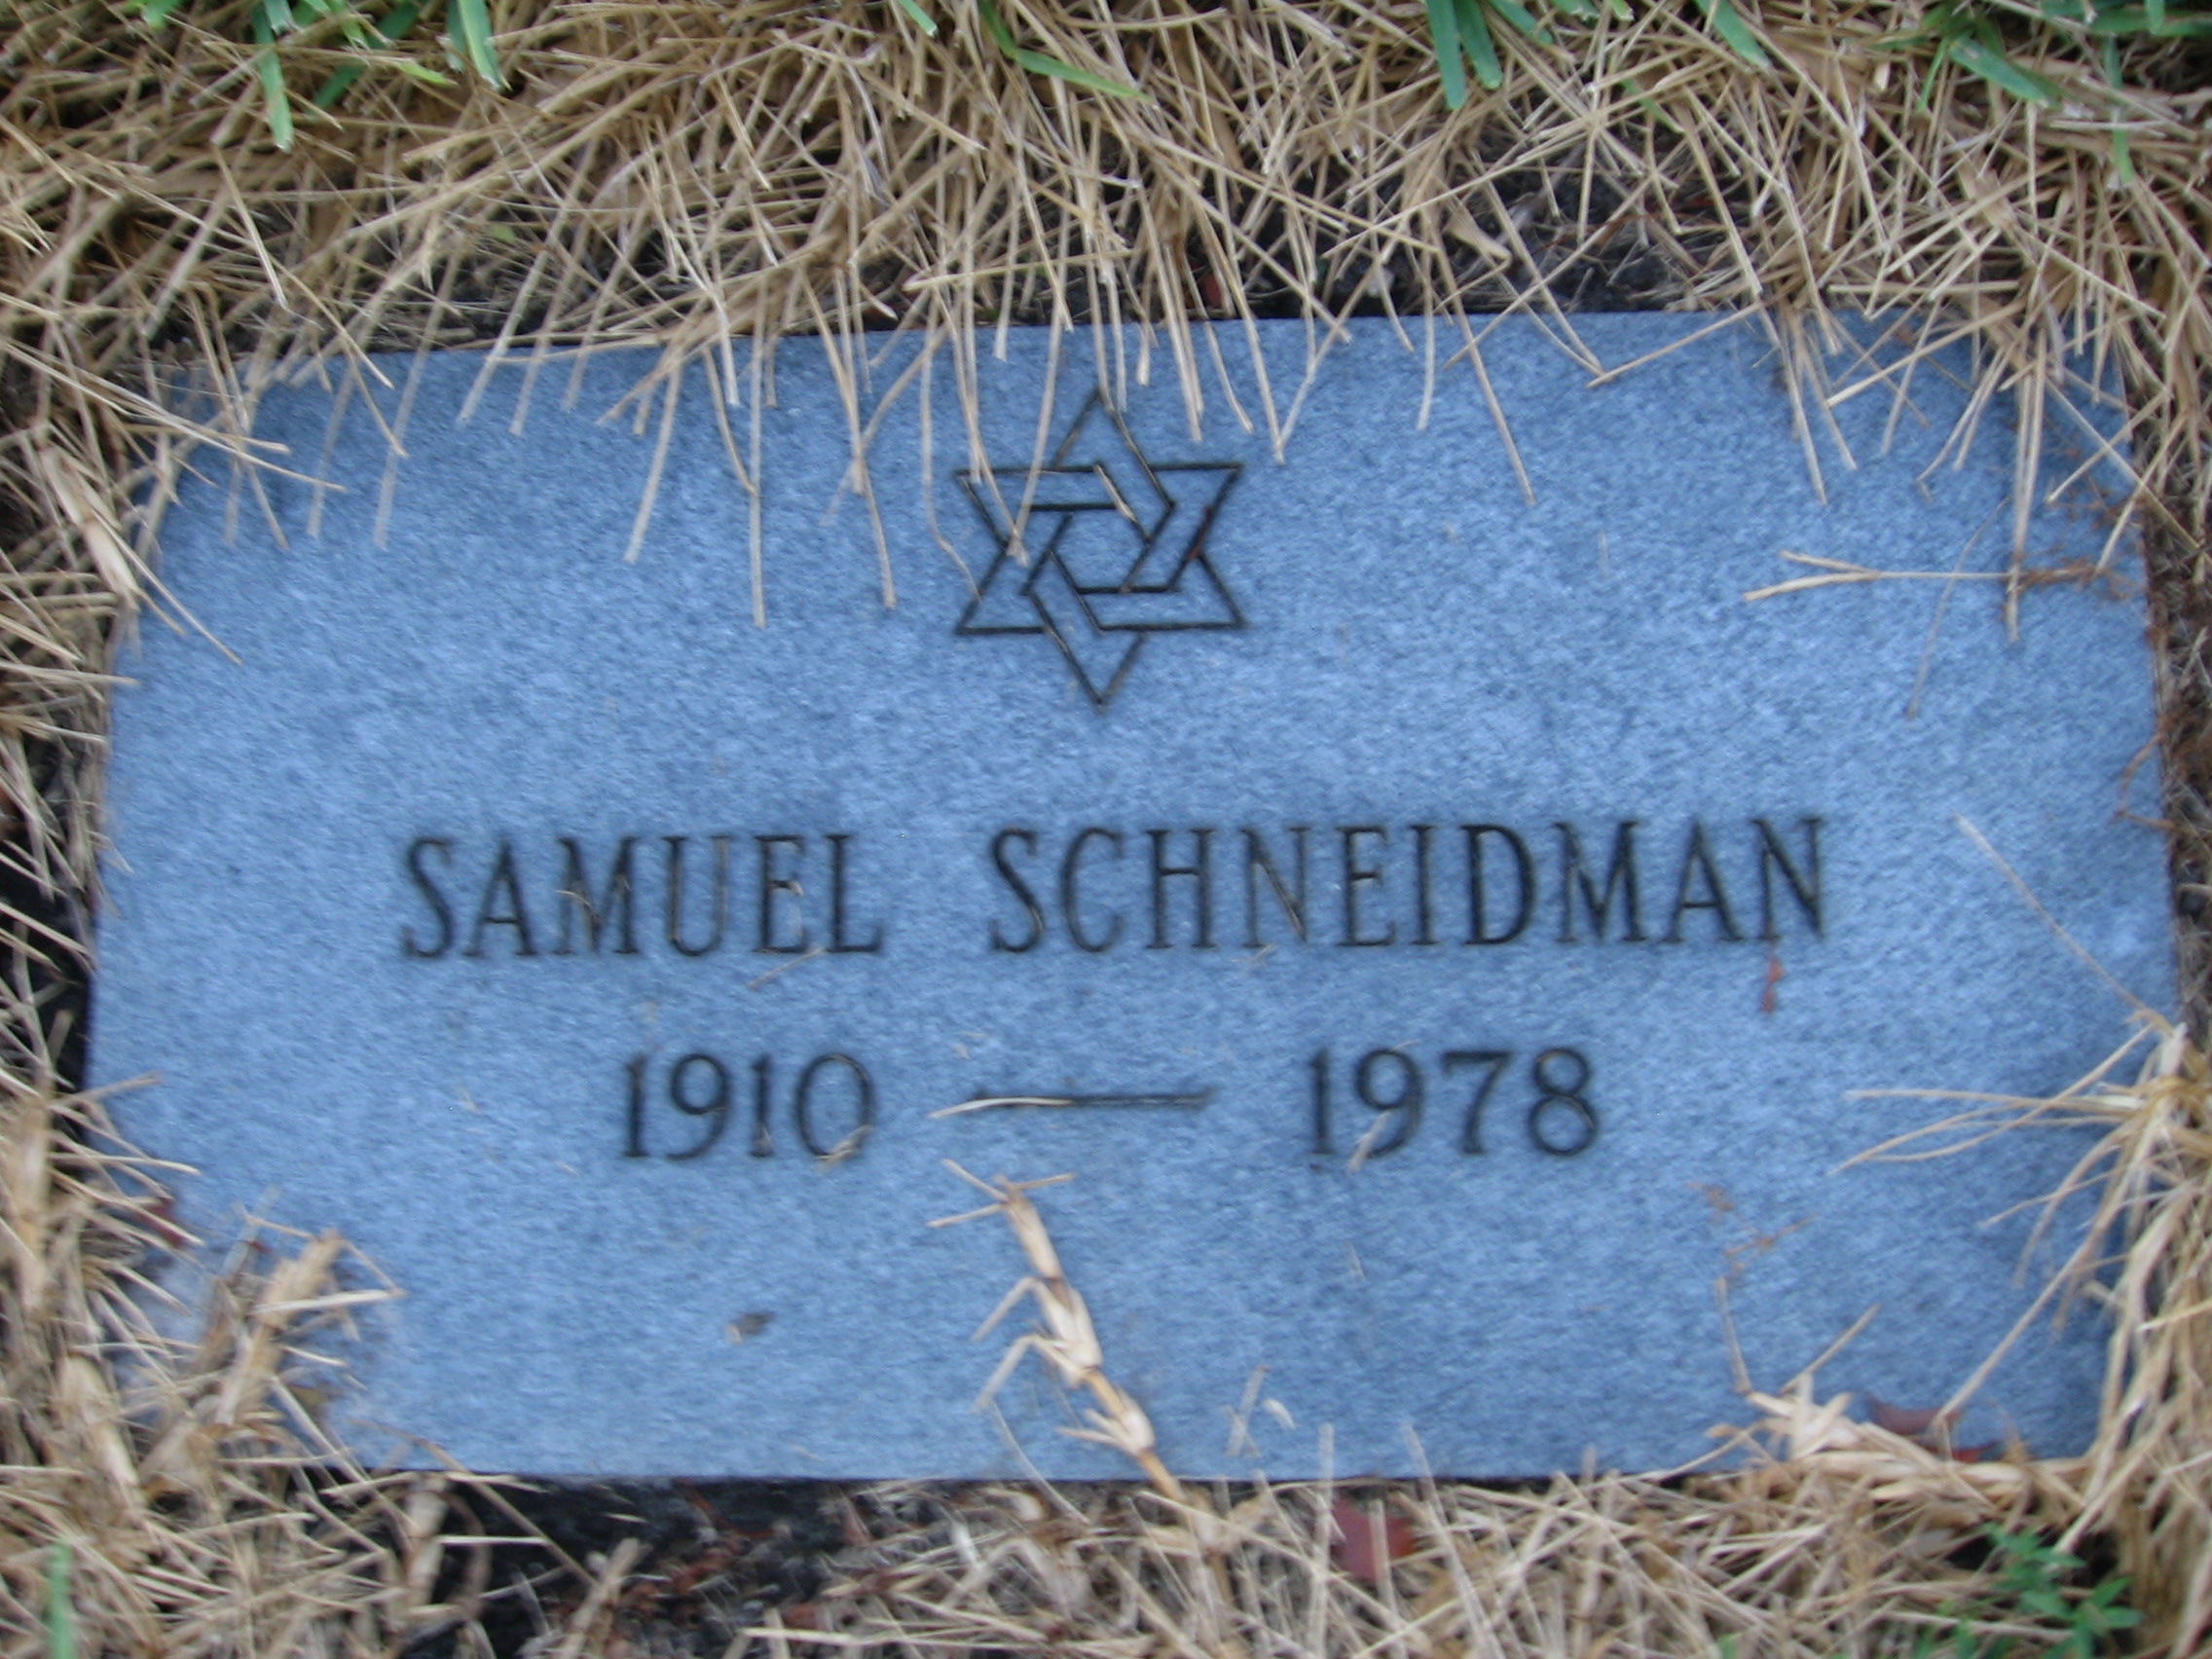 Samuel Schneidman